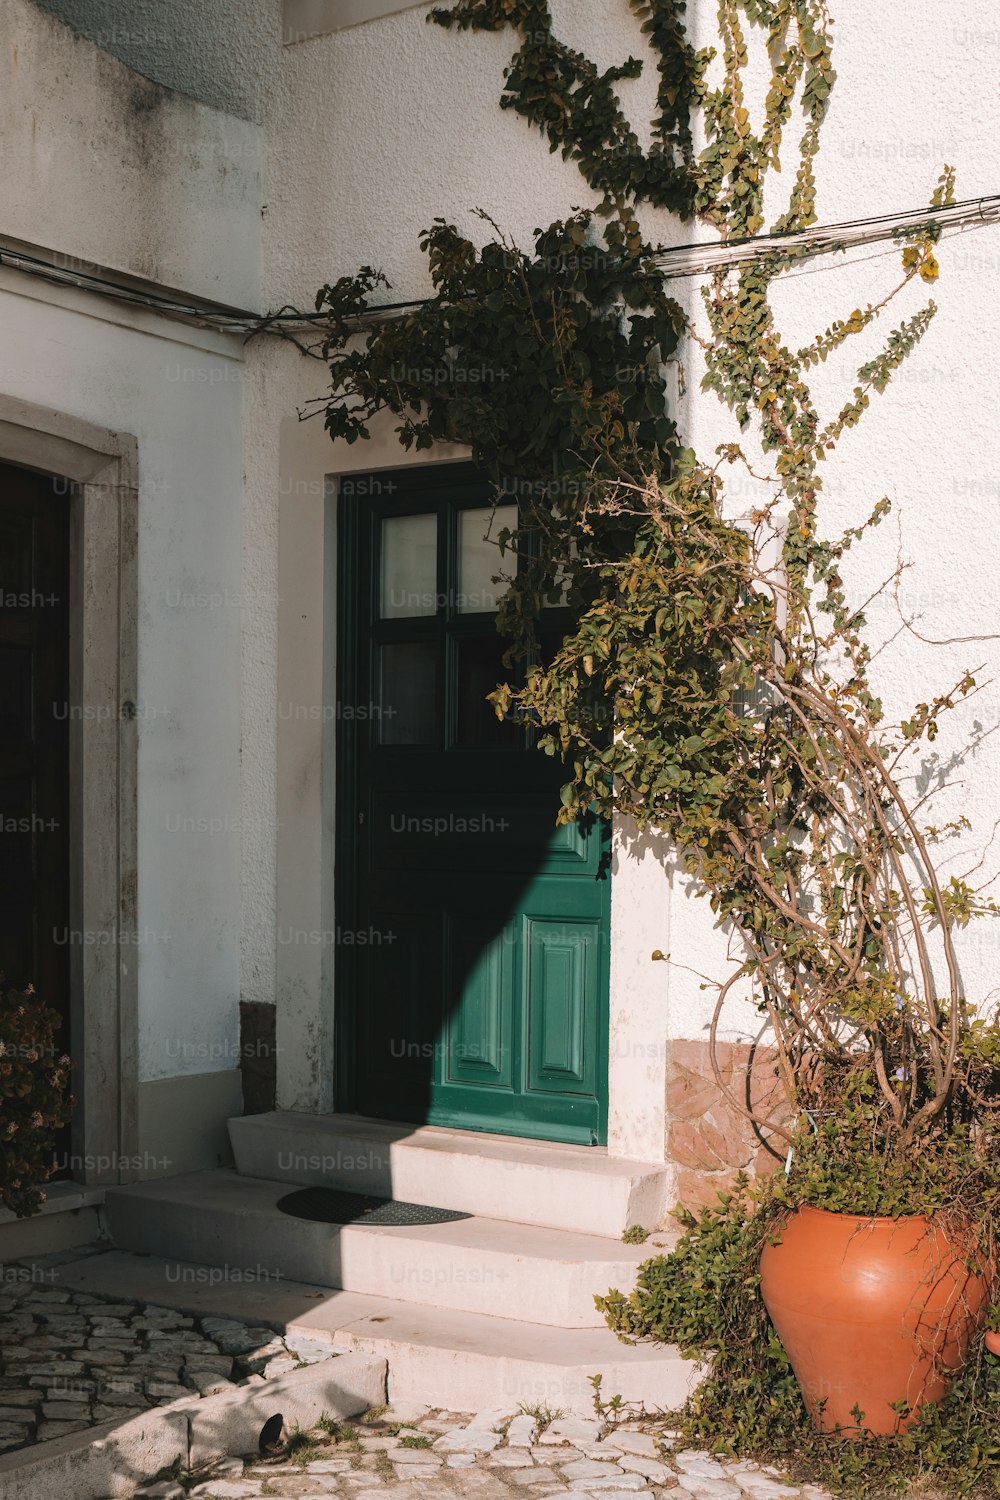 녹색 문이 있는 흰색 건물의 녹색 문